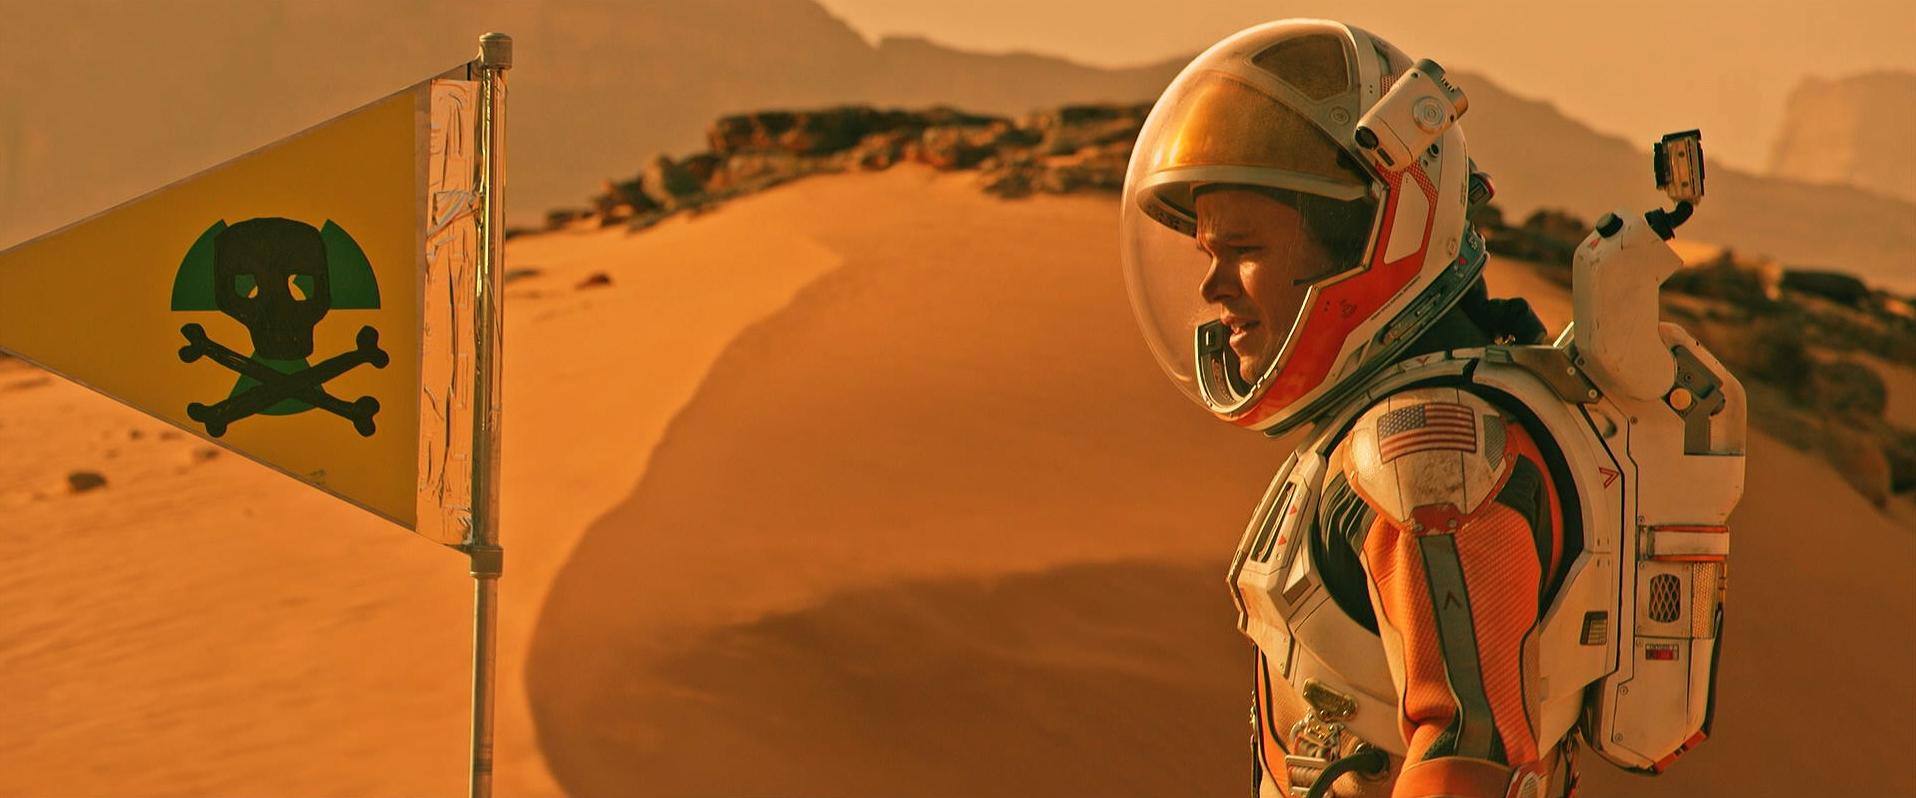 The Martian - Ridley Scott - Matt Damon - Mark Watney - Mars - radioactive - sign